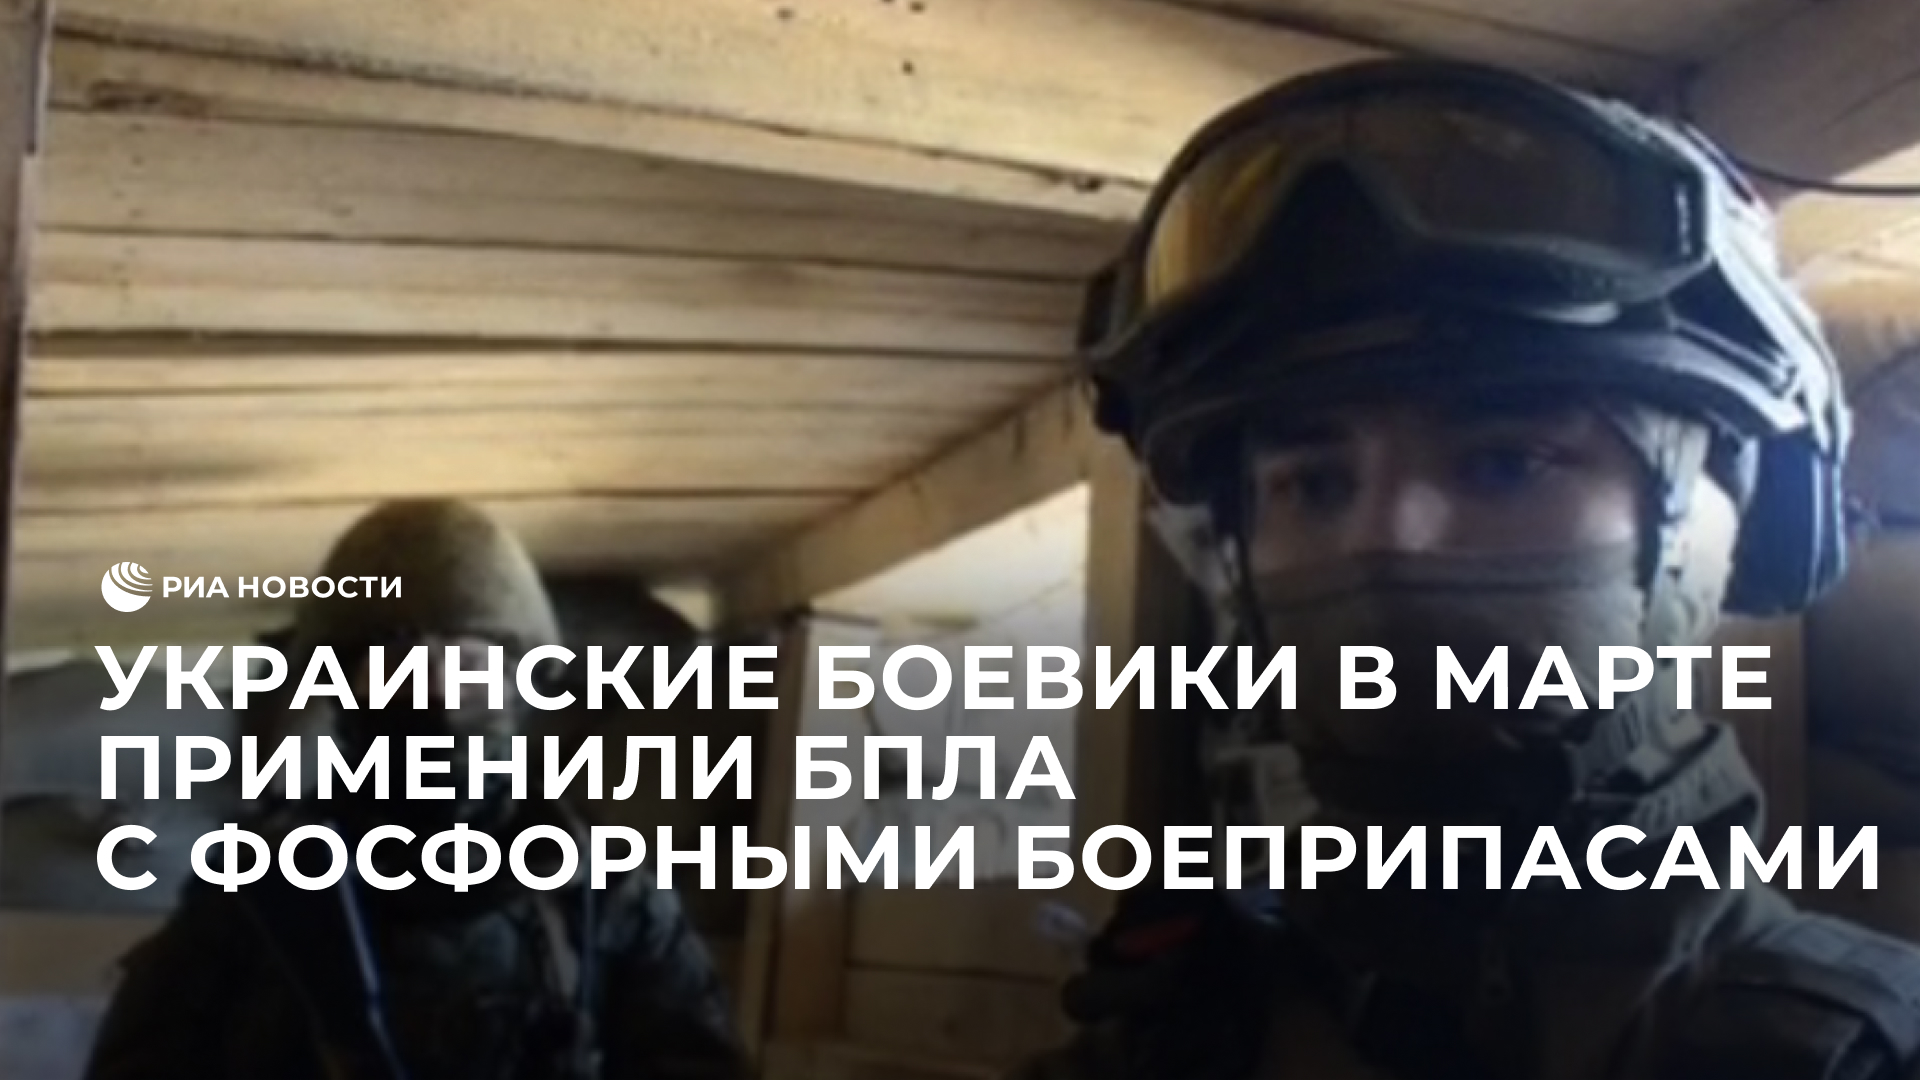 Украинские боевики в марте применили БПЛА с фосфорными боеприпасами